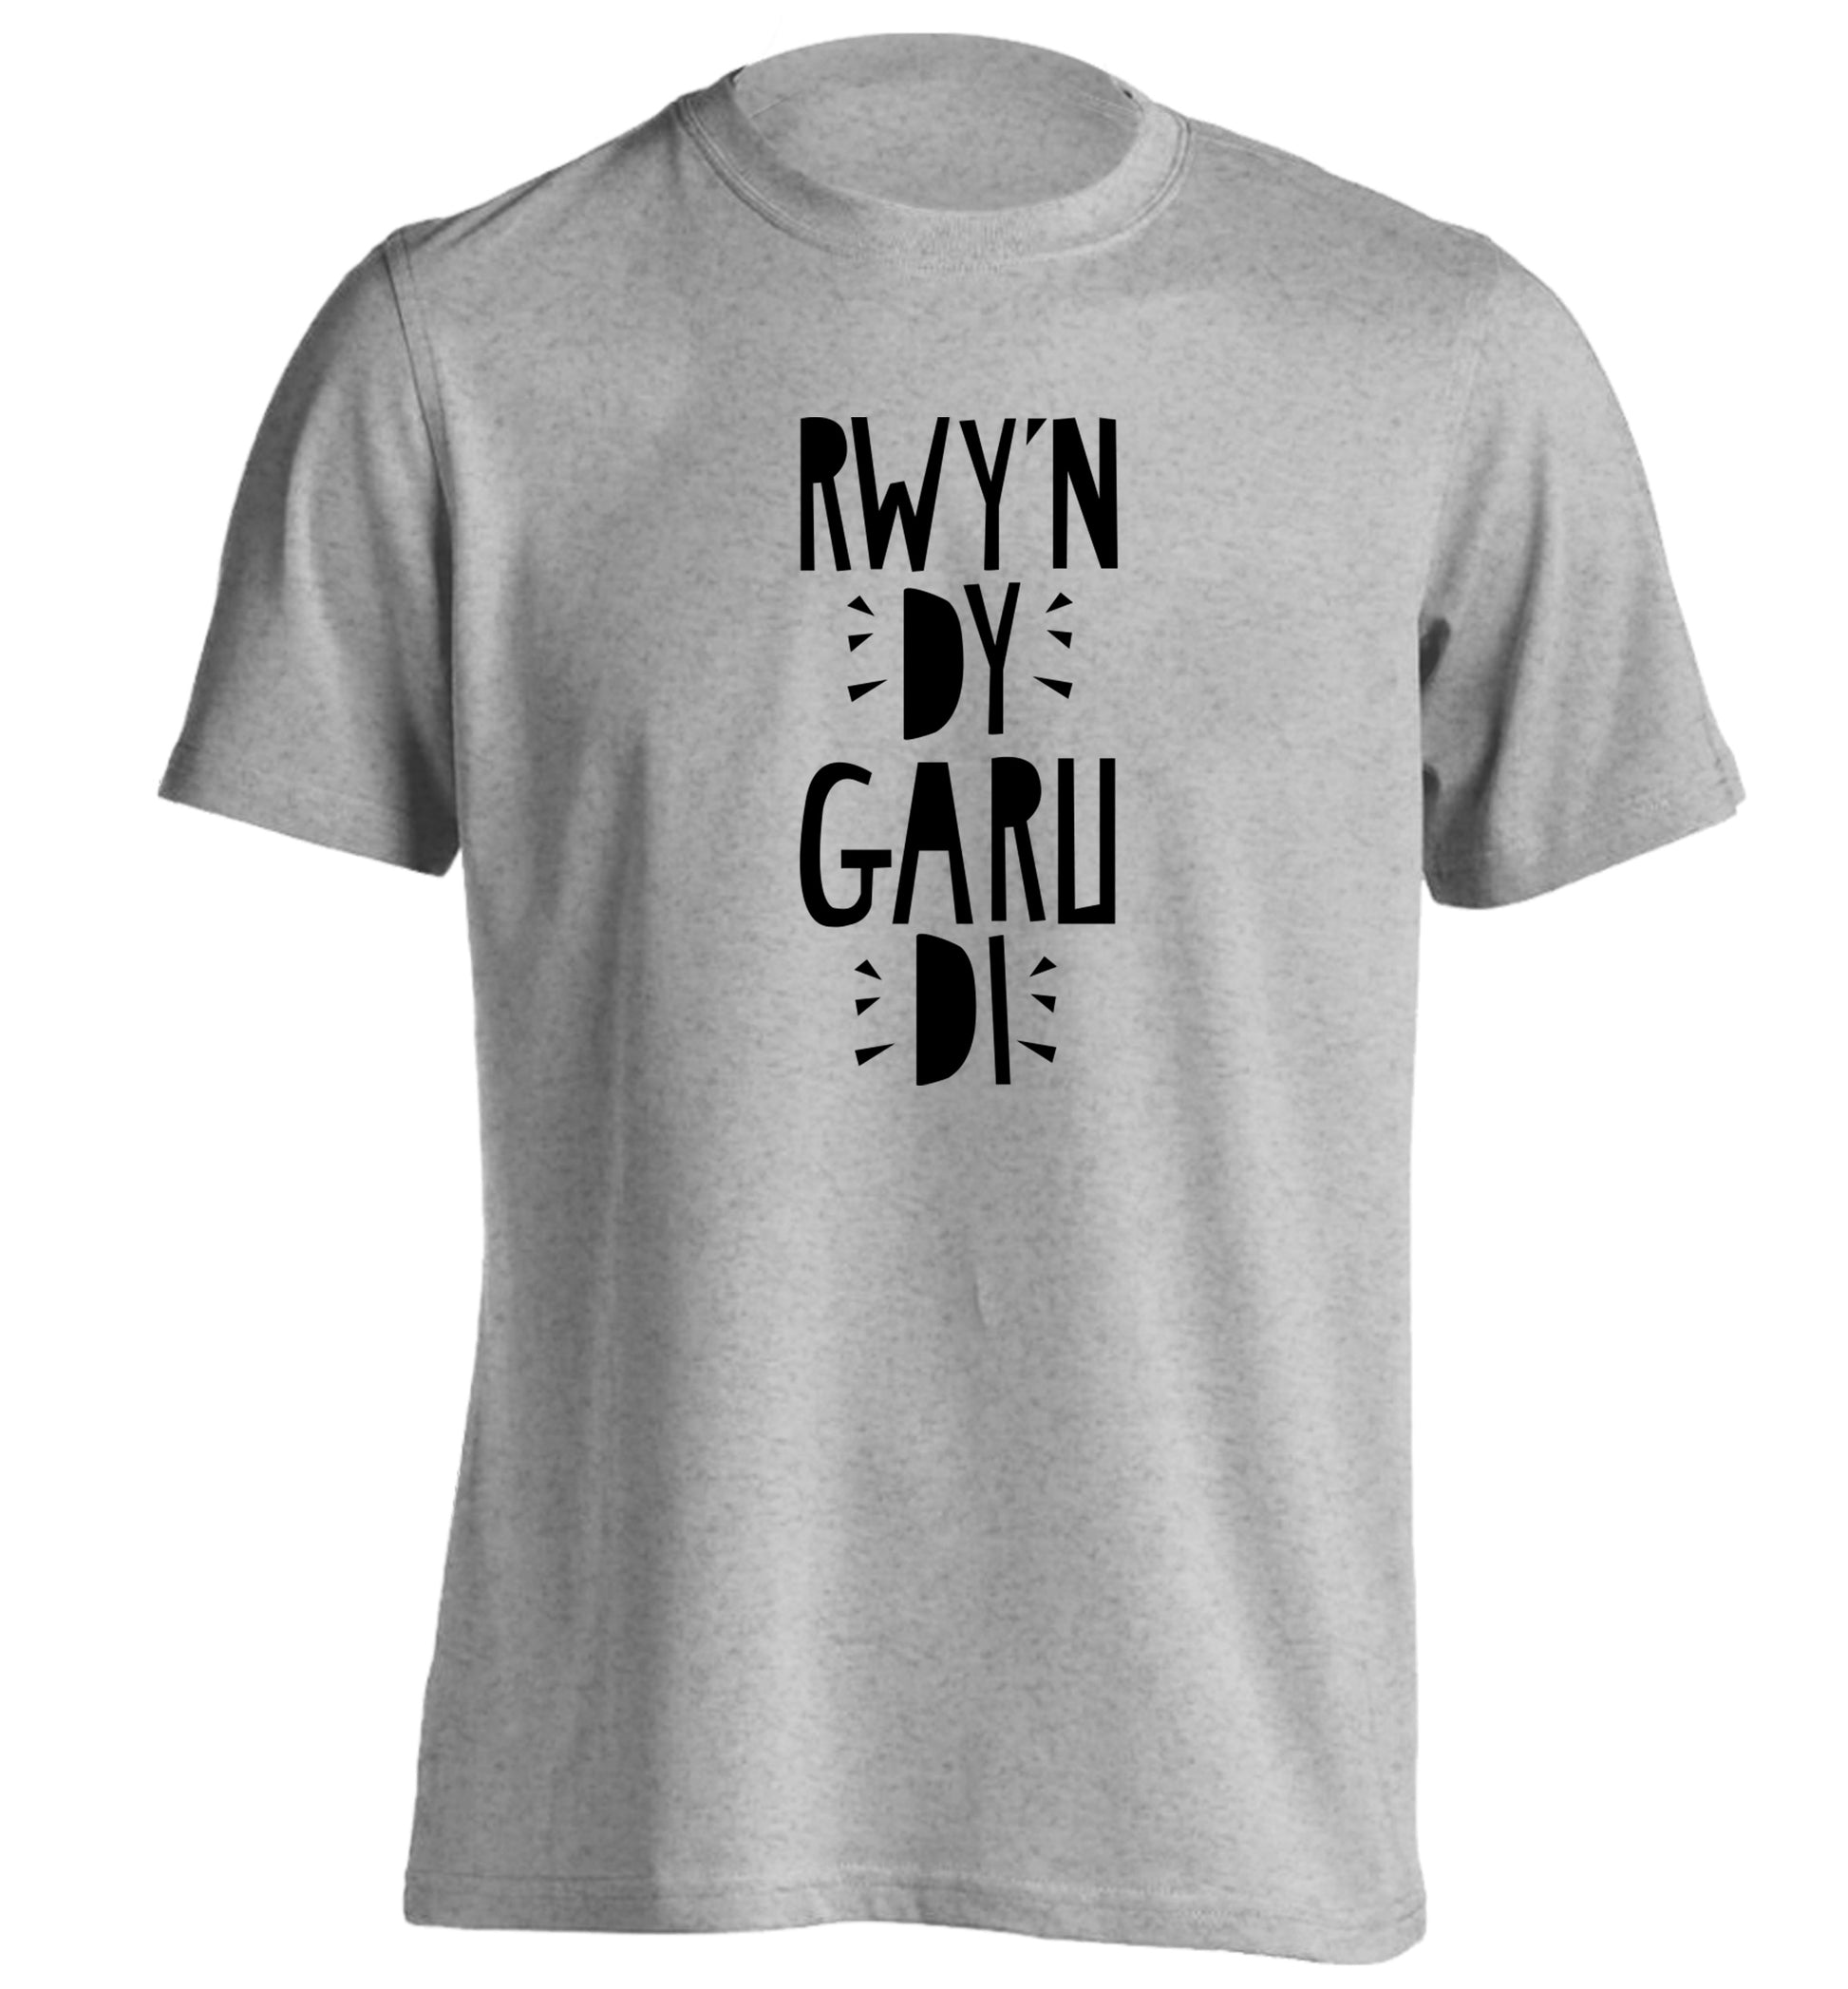 Rwy'n dy garu di - I love you adults unisex grey Tshirt 2XL